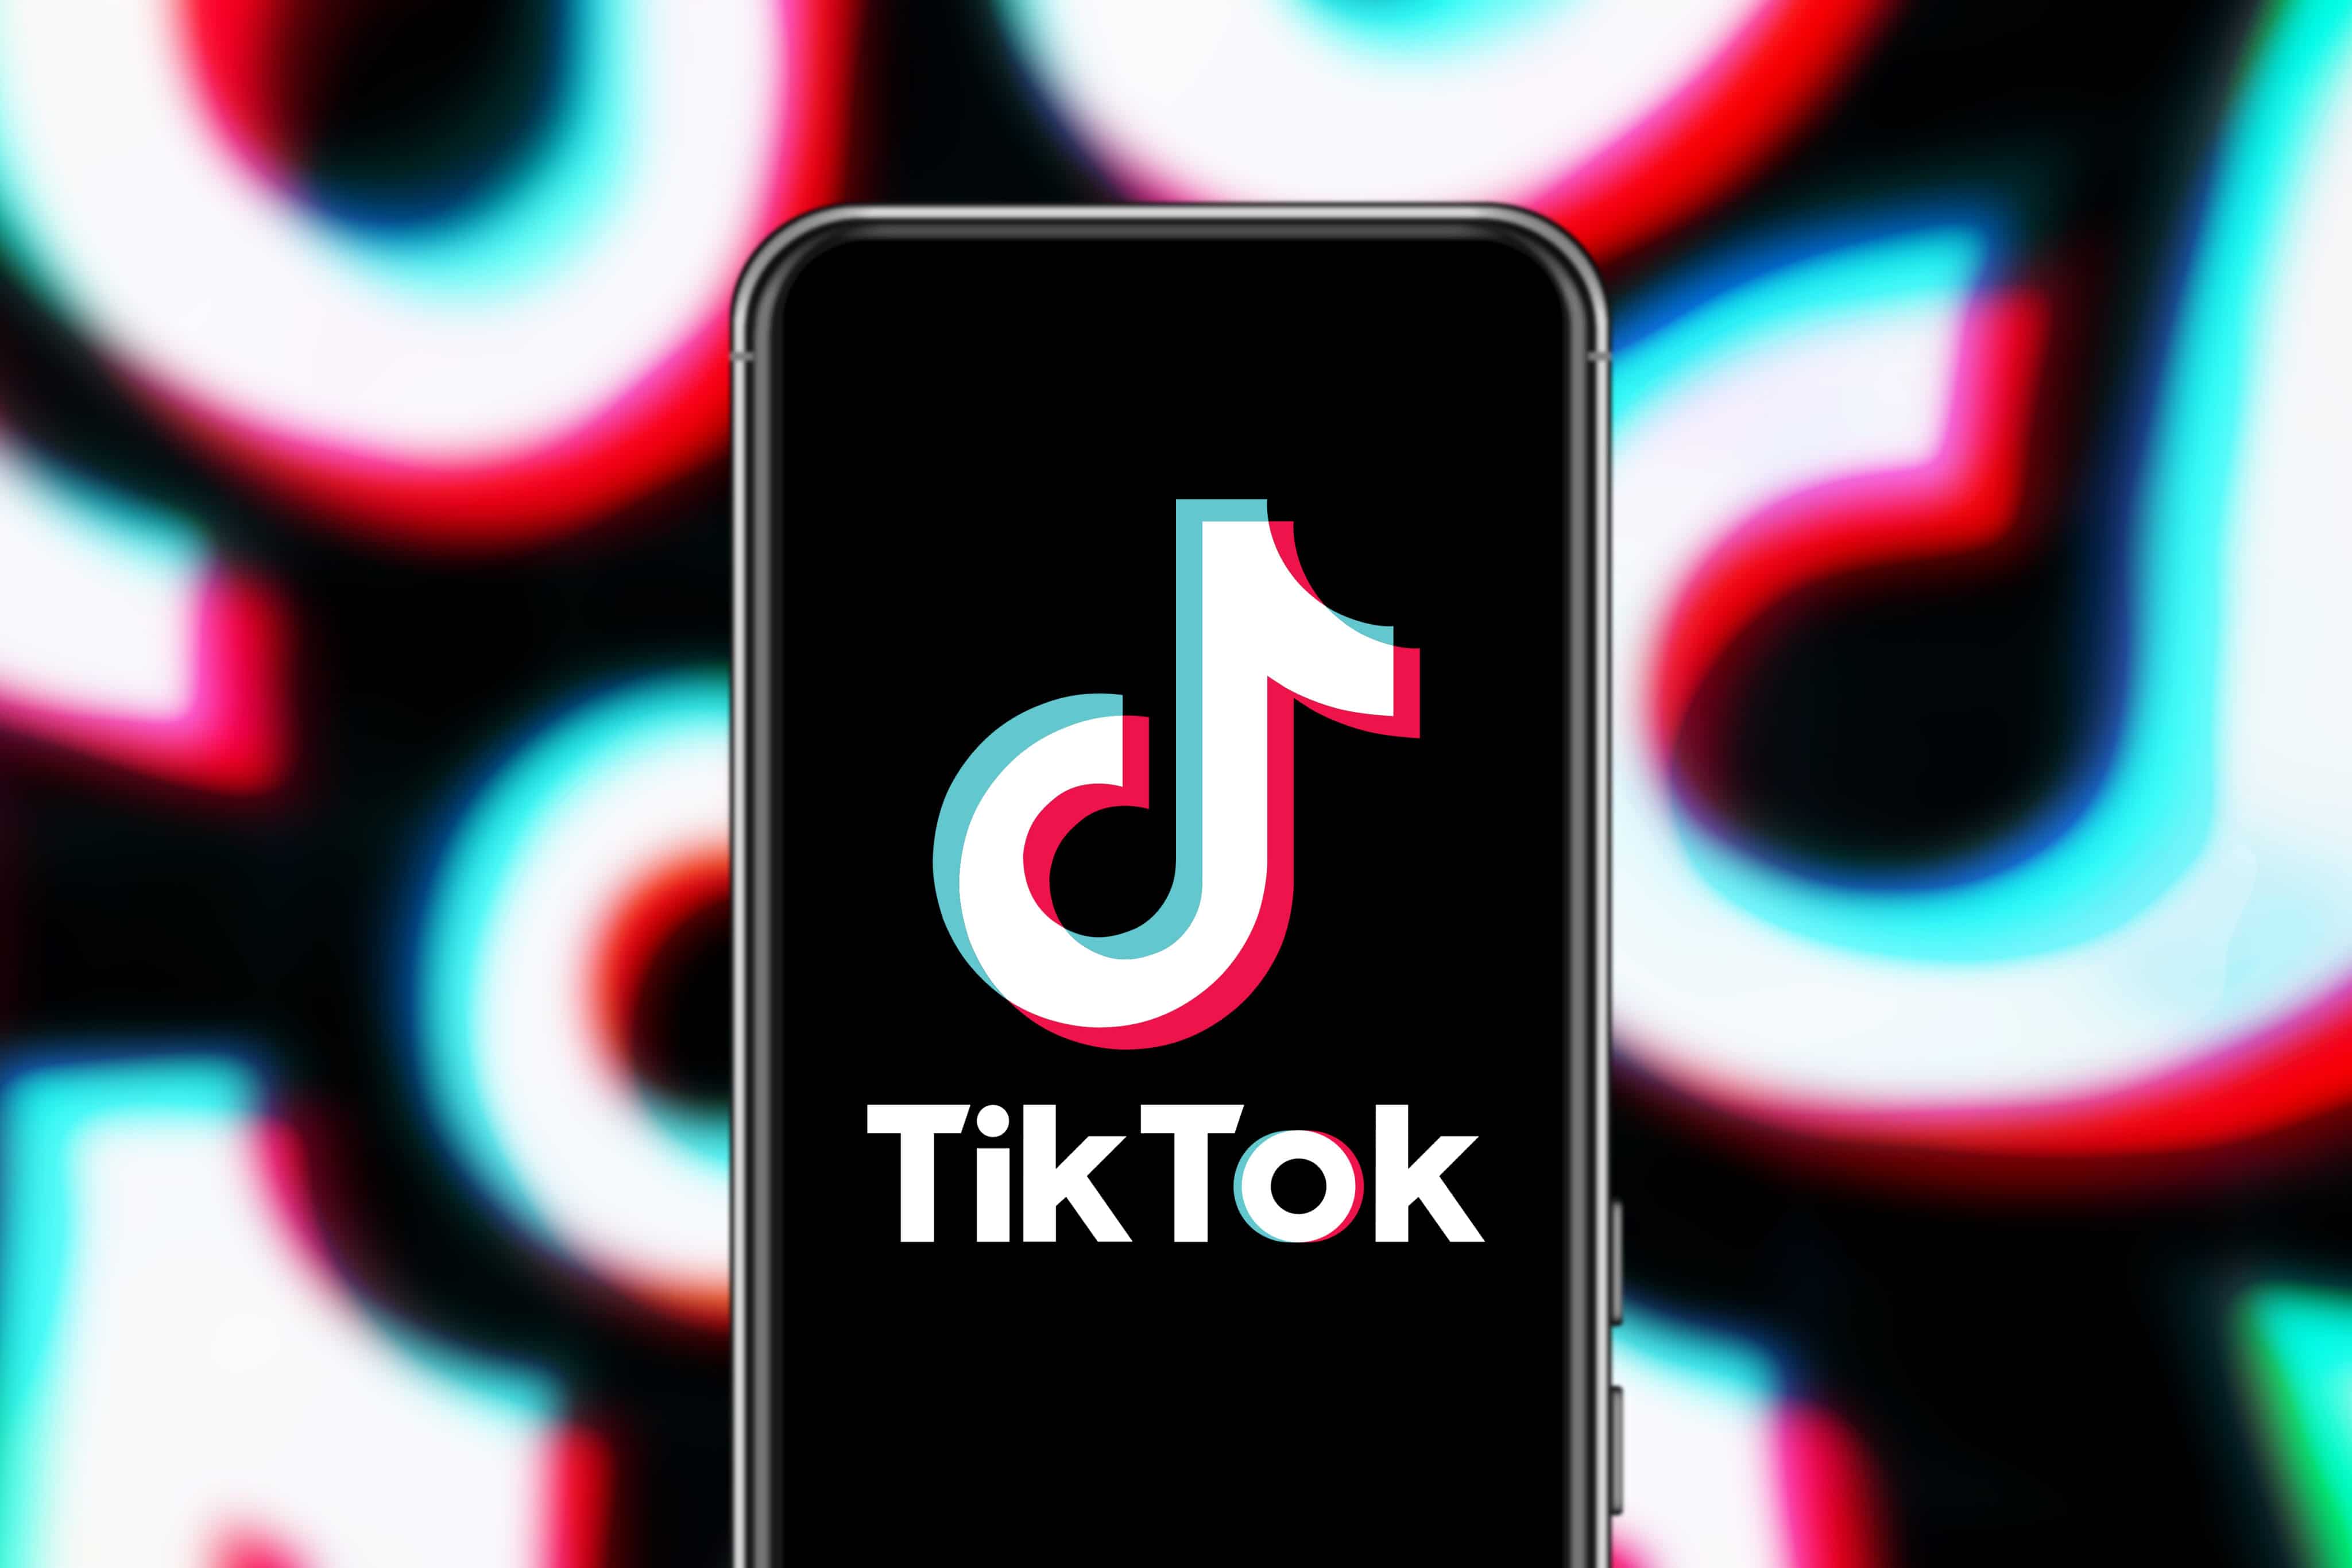 TikTok: como alterar a velocidade de reprodução dos vídeos [iPhone